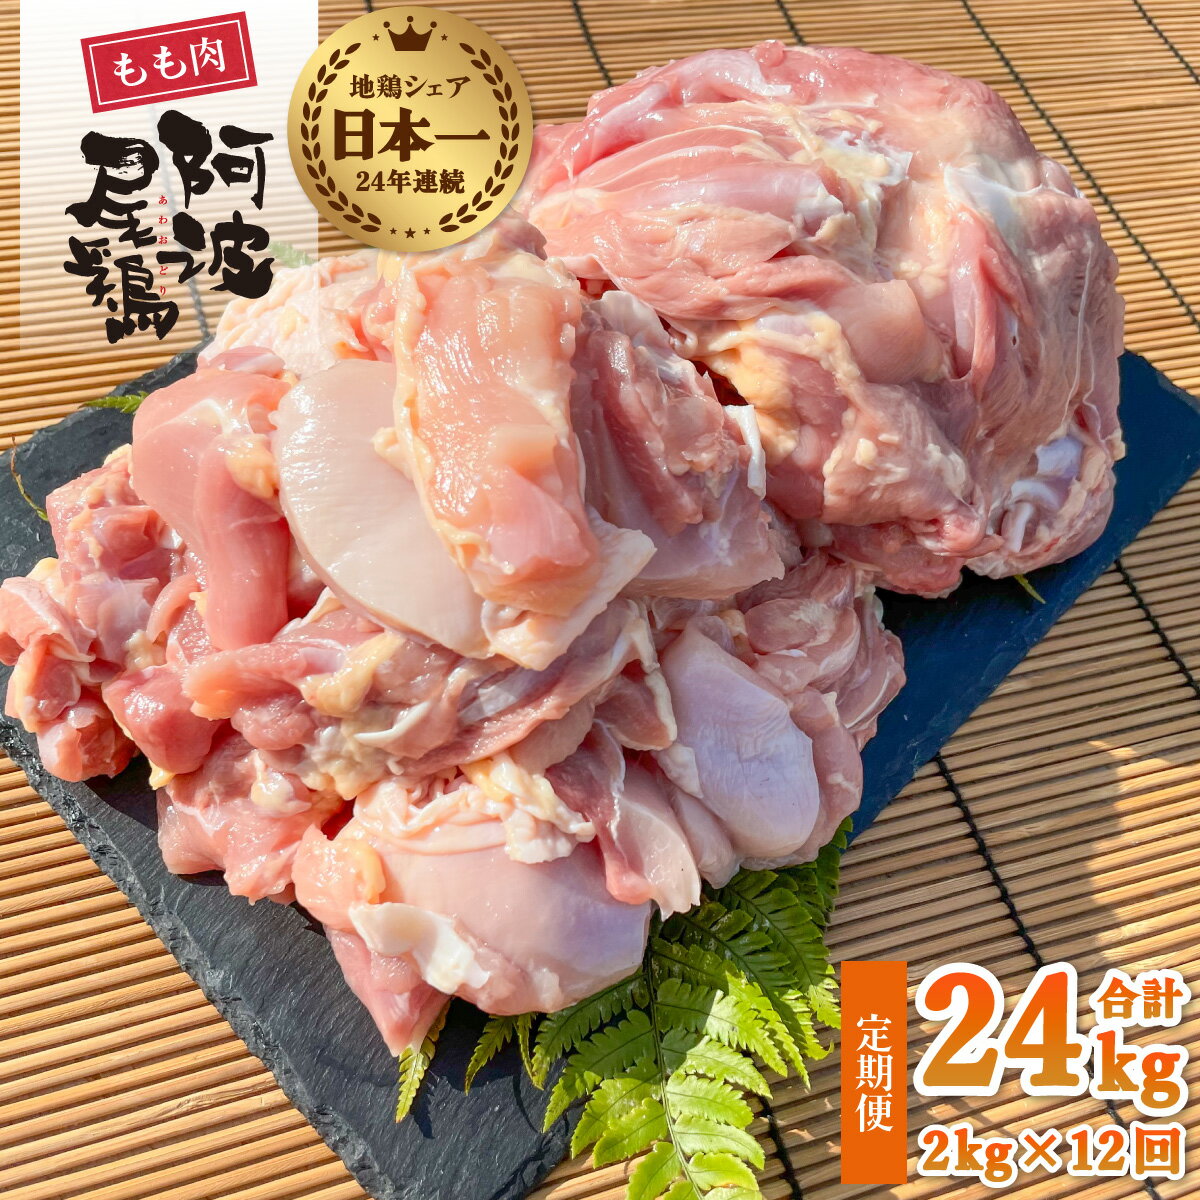 最高級 地鶏 鶏もも 12ヶ月 定期便 国産 日本一 阿波尾鶏 小分け 約24kg (約2kg×12回) 冷凍 切り身 正肉 あわおどり 鶏もも肉 鶏モモ 鶏モモ肉